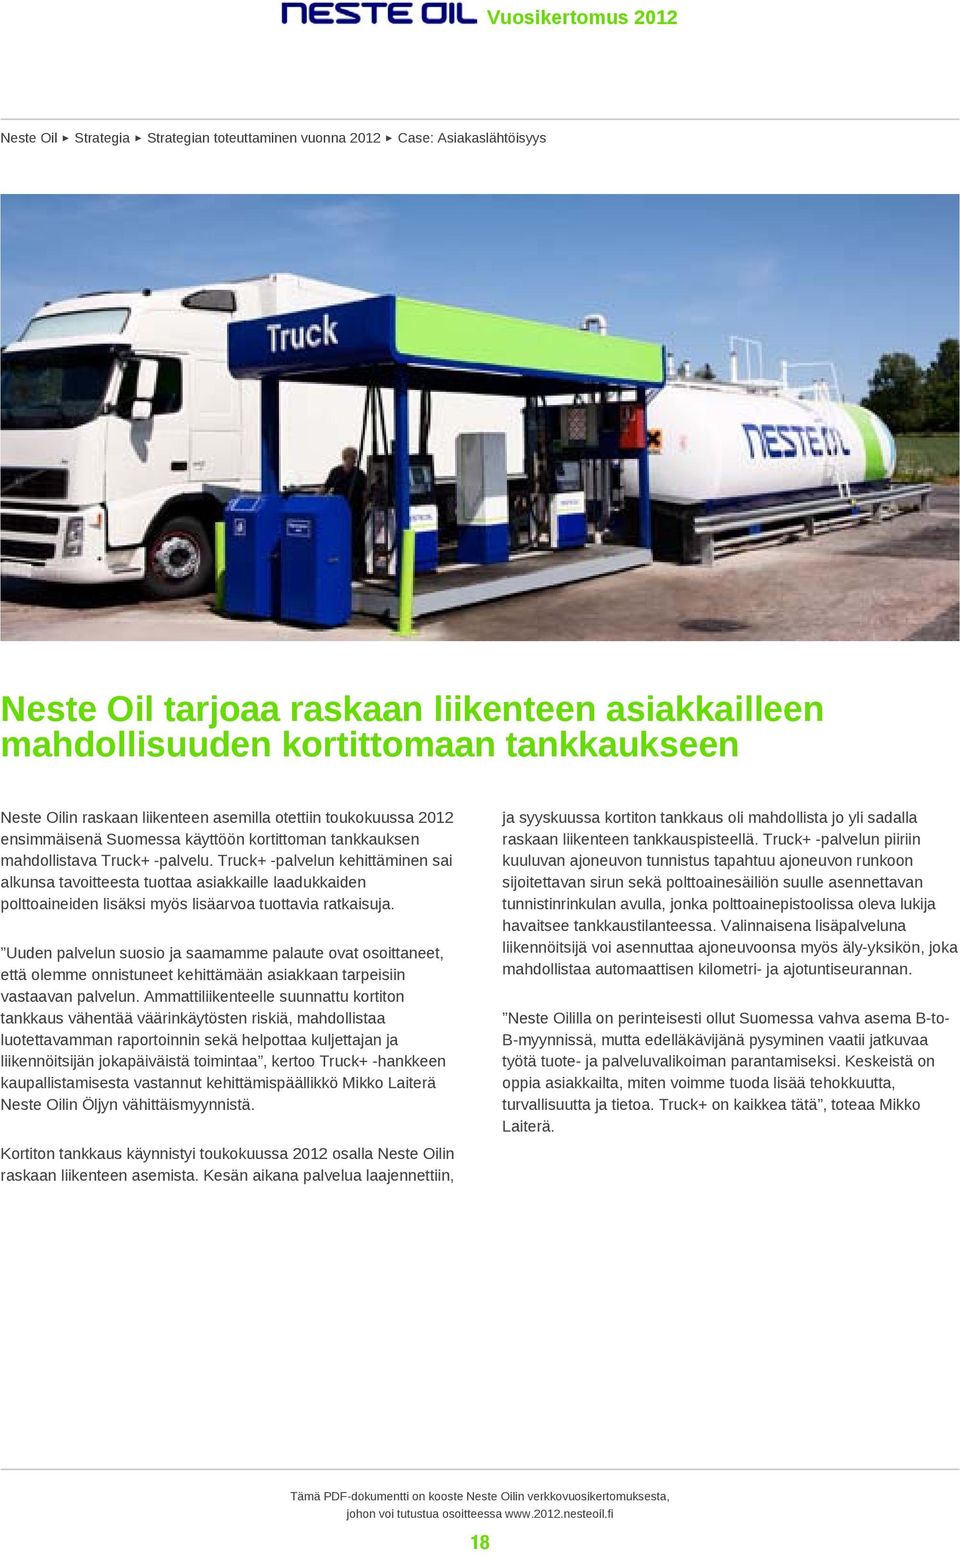 Truck+ -palvelun kehittäminen sai alkunsa tavoitteesta tuottaa asiakkaille laadukkaiden polttoaineiden lisäksi myös lisäarvoa tuottavia ratkaisuja.